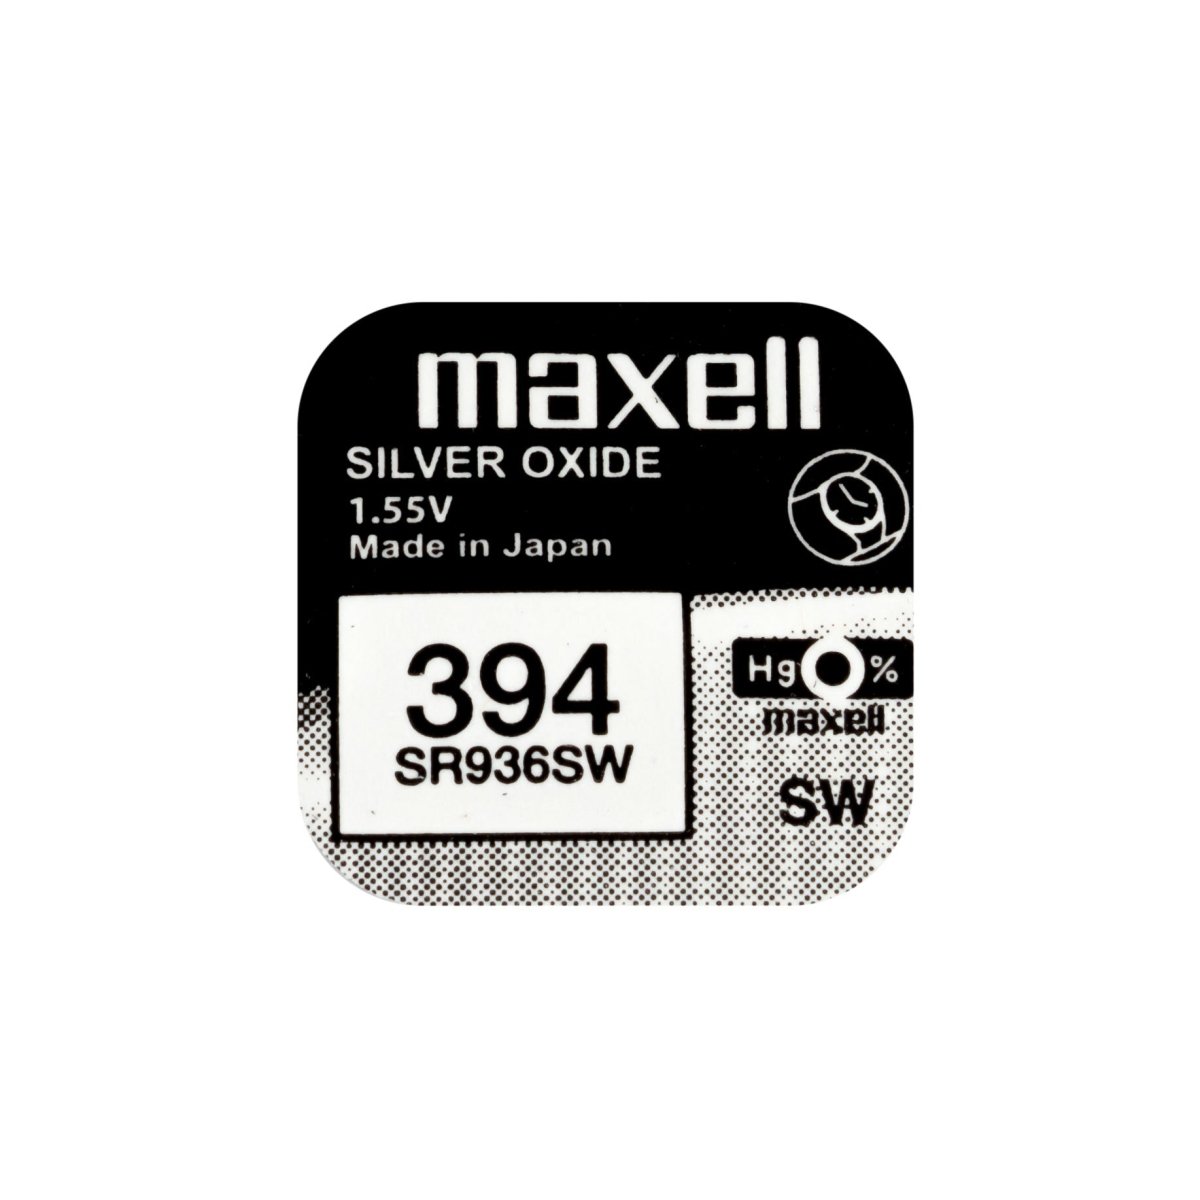 10x Maxell 394 Pila Botón Oxido de Plata SR936SW 1.55V